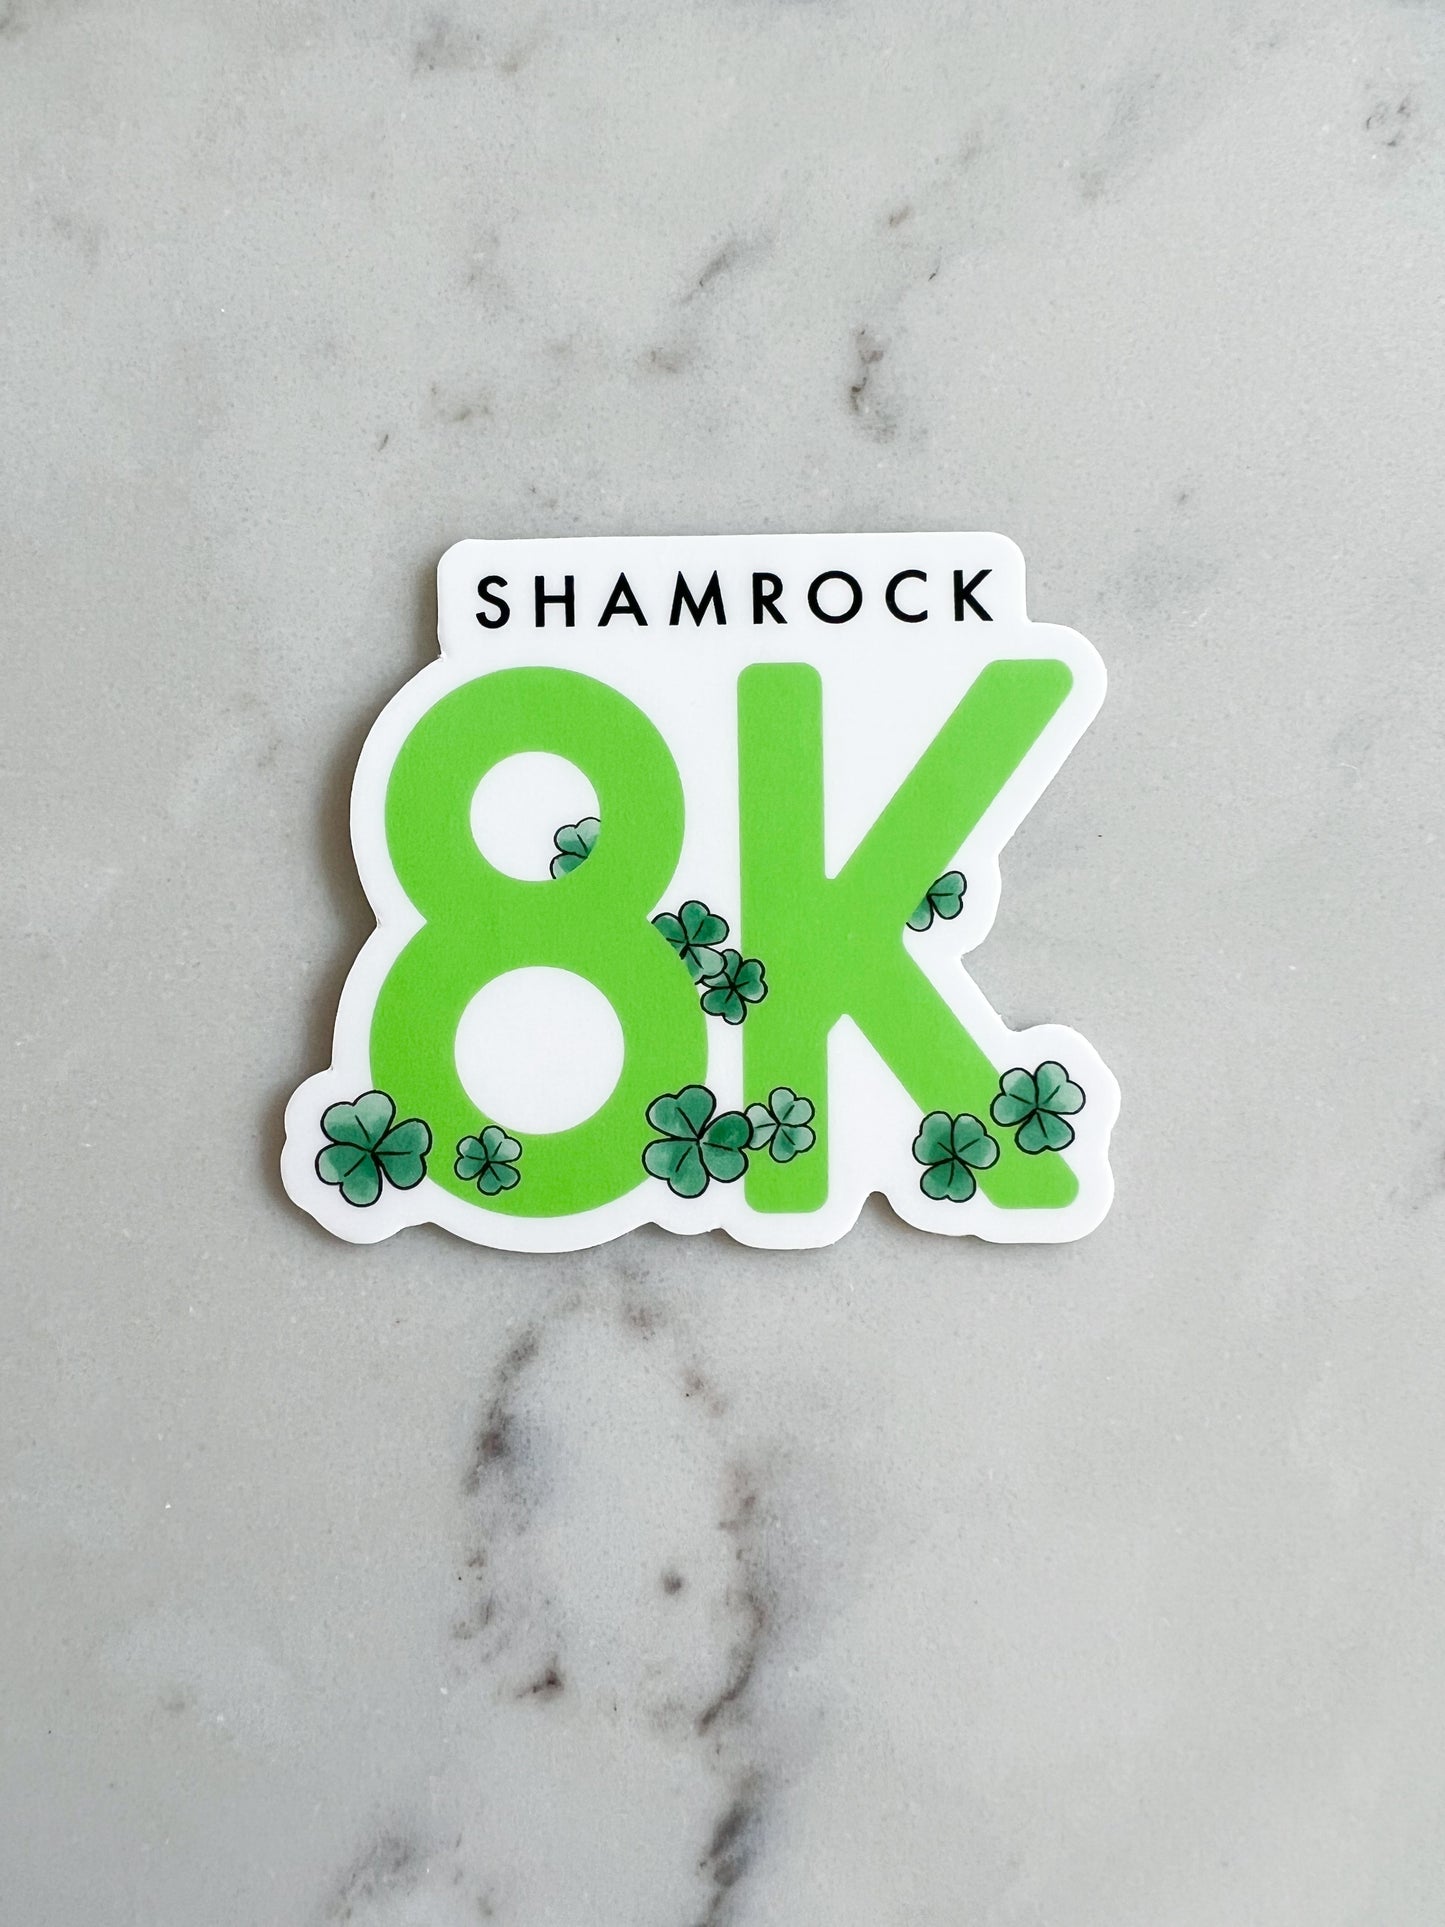 Shamrock 8k race sticker - Virginia Beach , runner sticker, race sticker